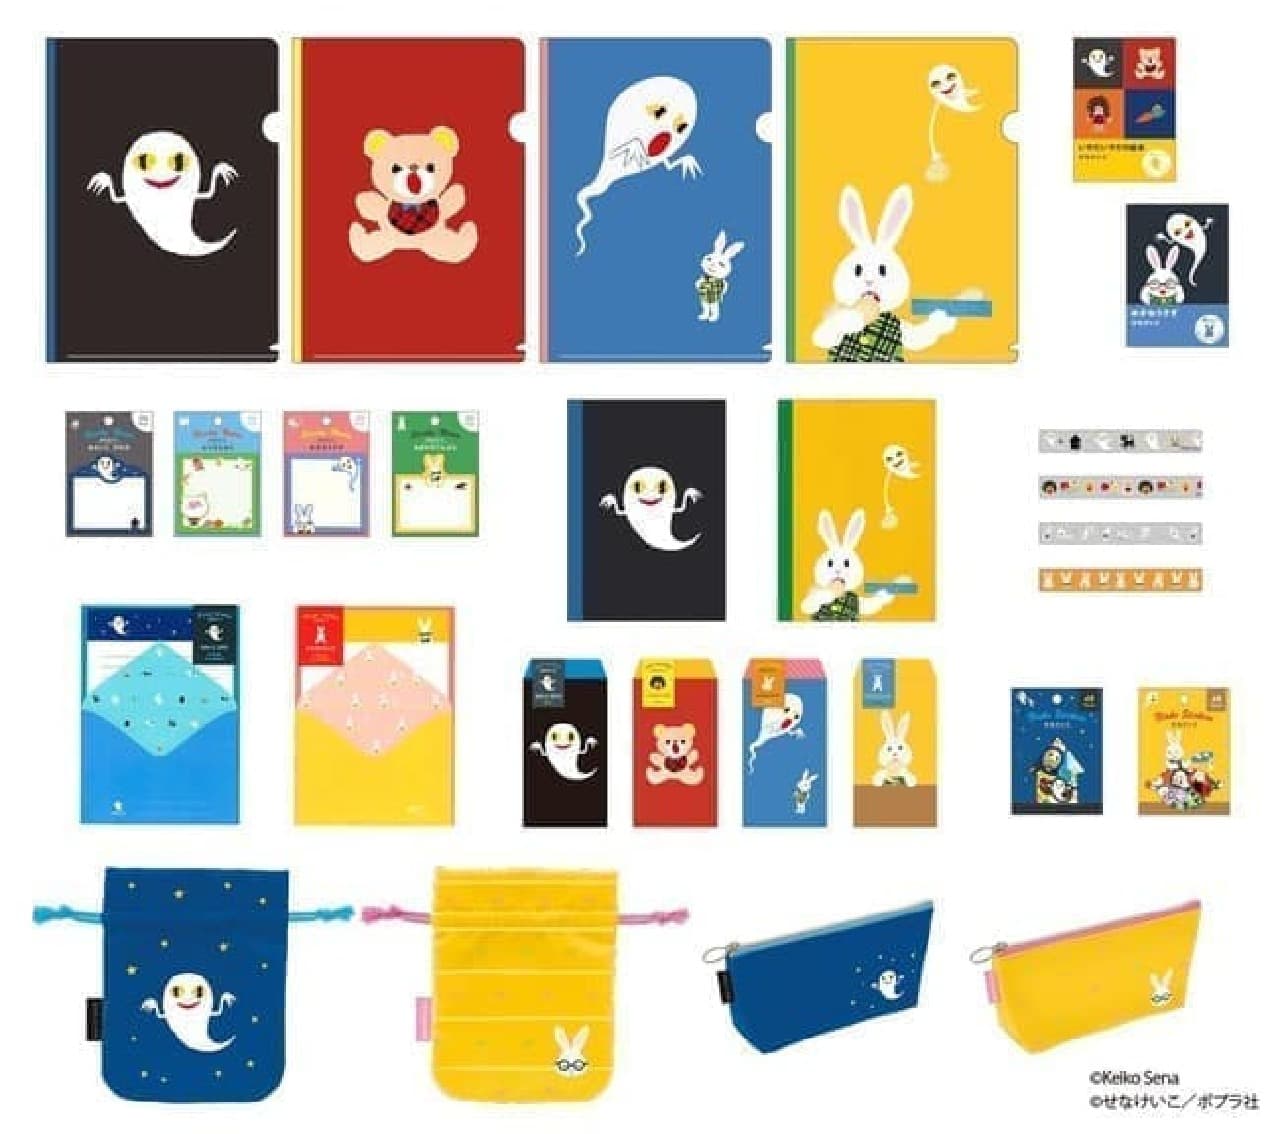 Keiko Sena's stationery series is here! Colorful such as "Nenai Kodare"